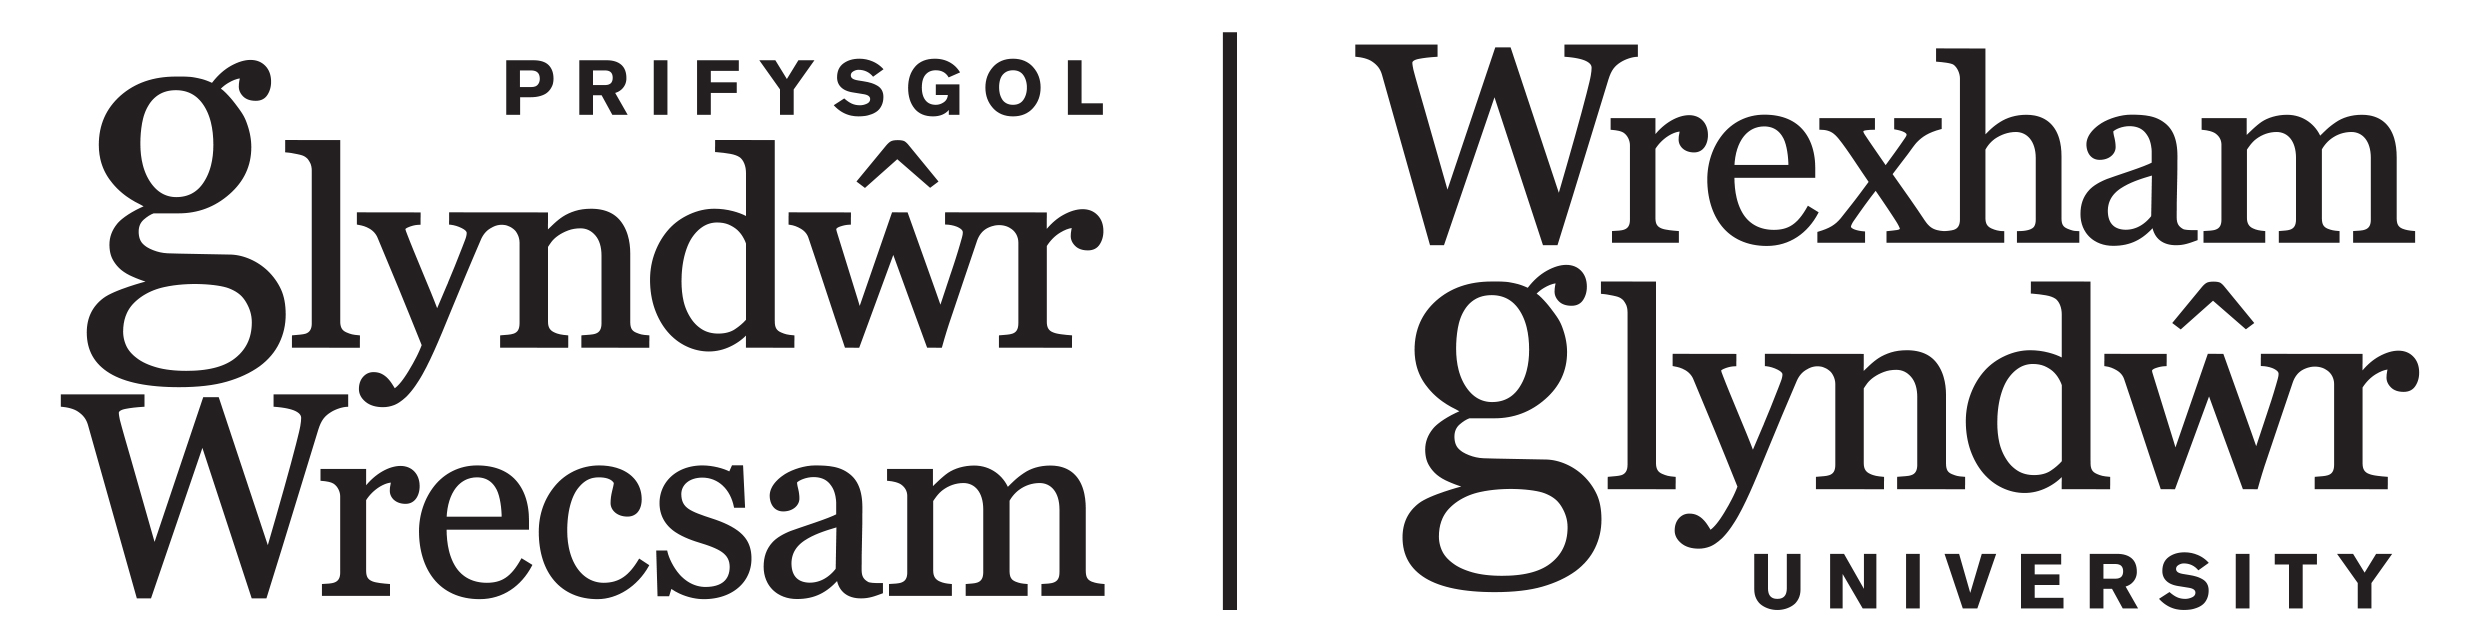 glyndwr_logo